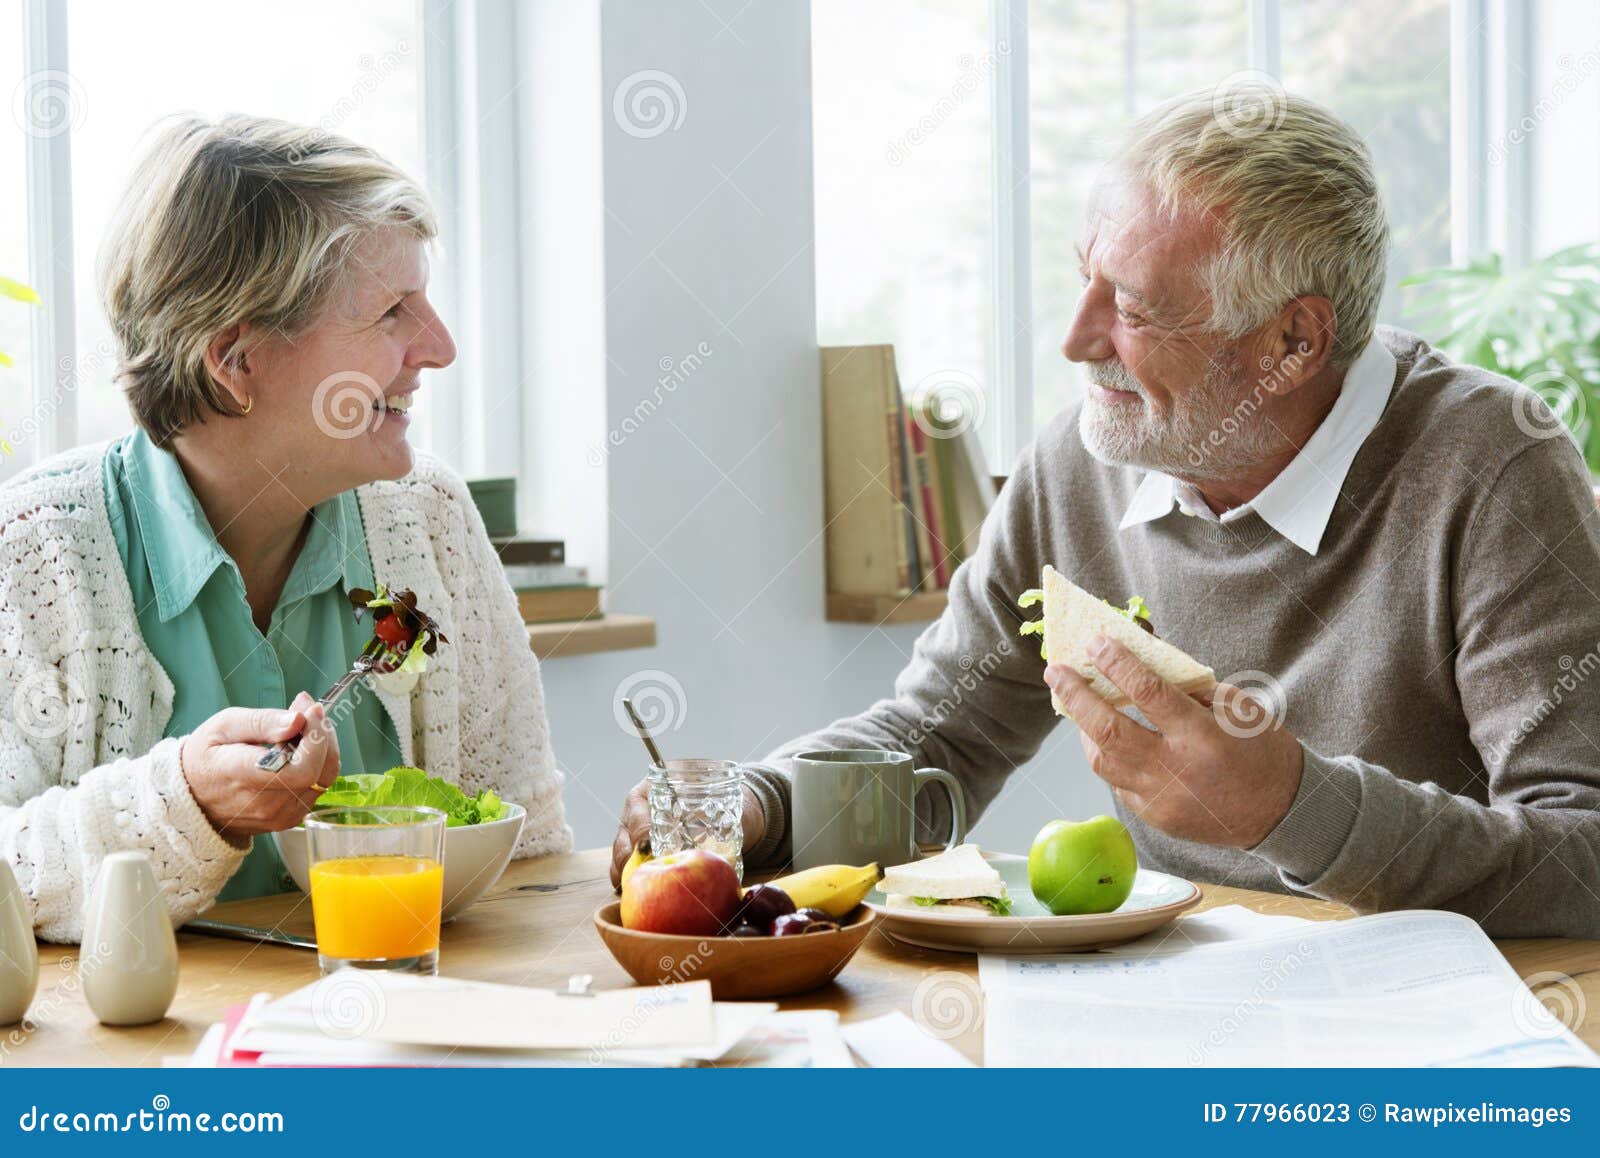 pensioner elderly couple eating brunch concept